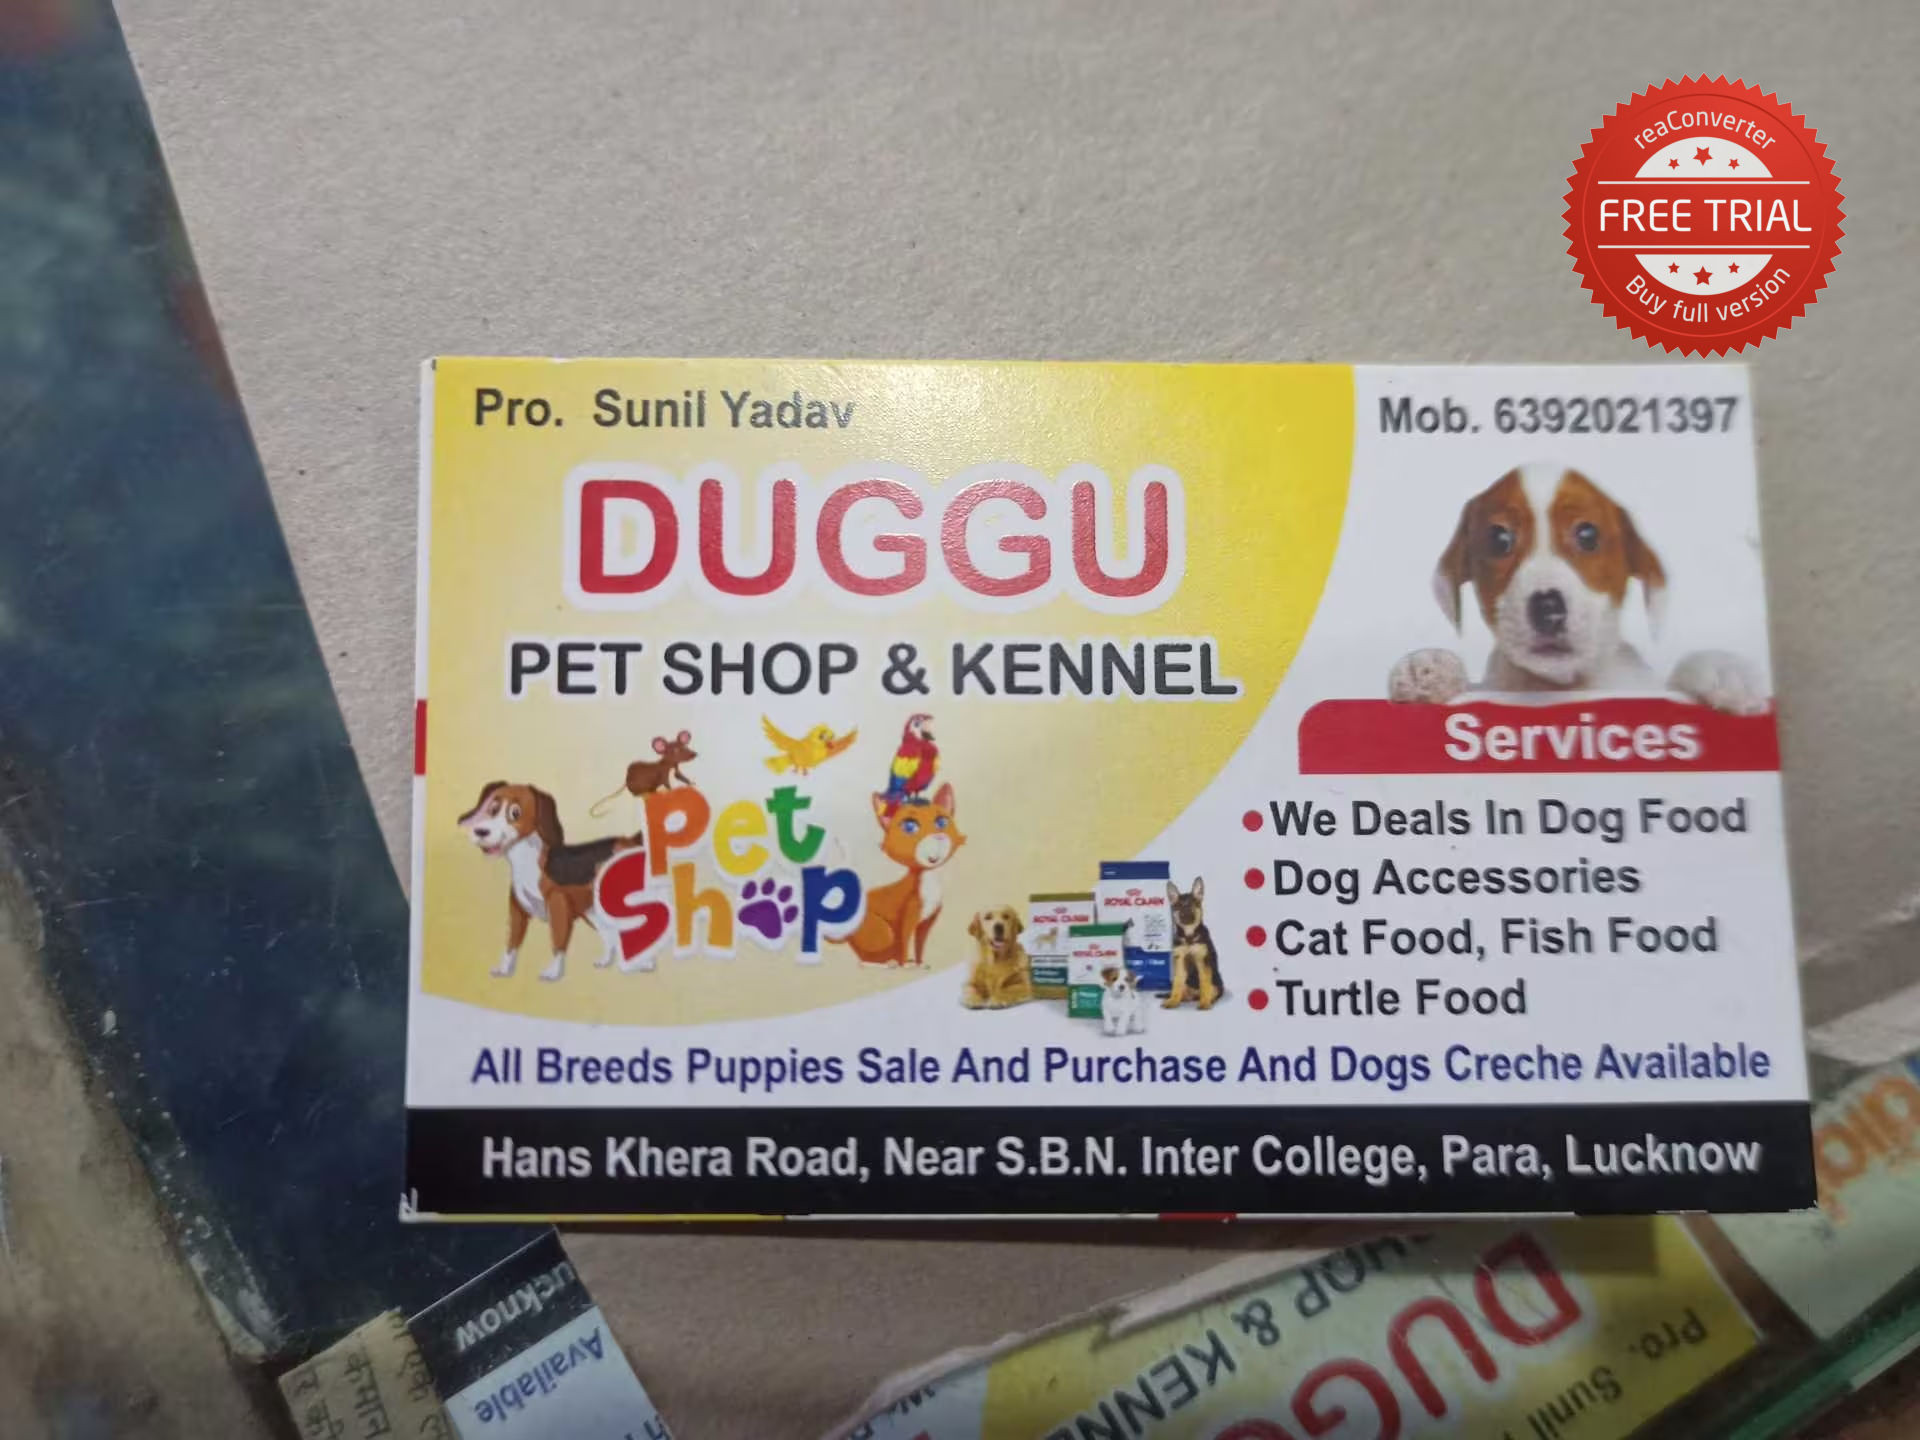 Duggu Pet Shop